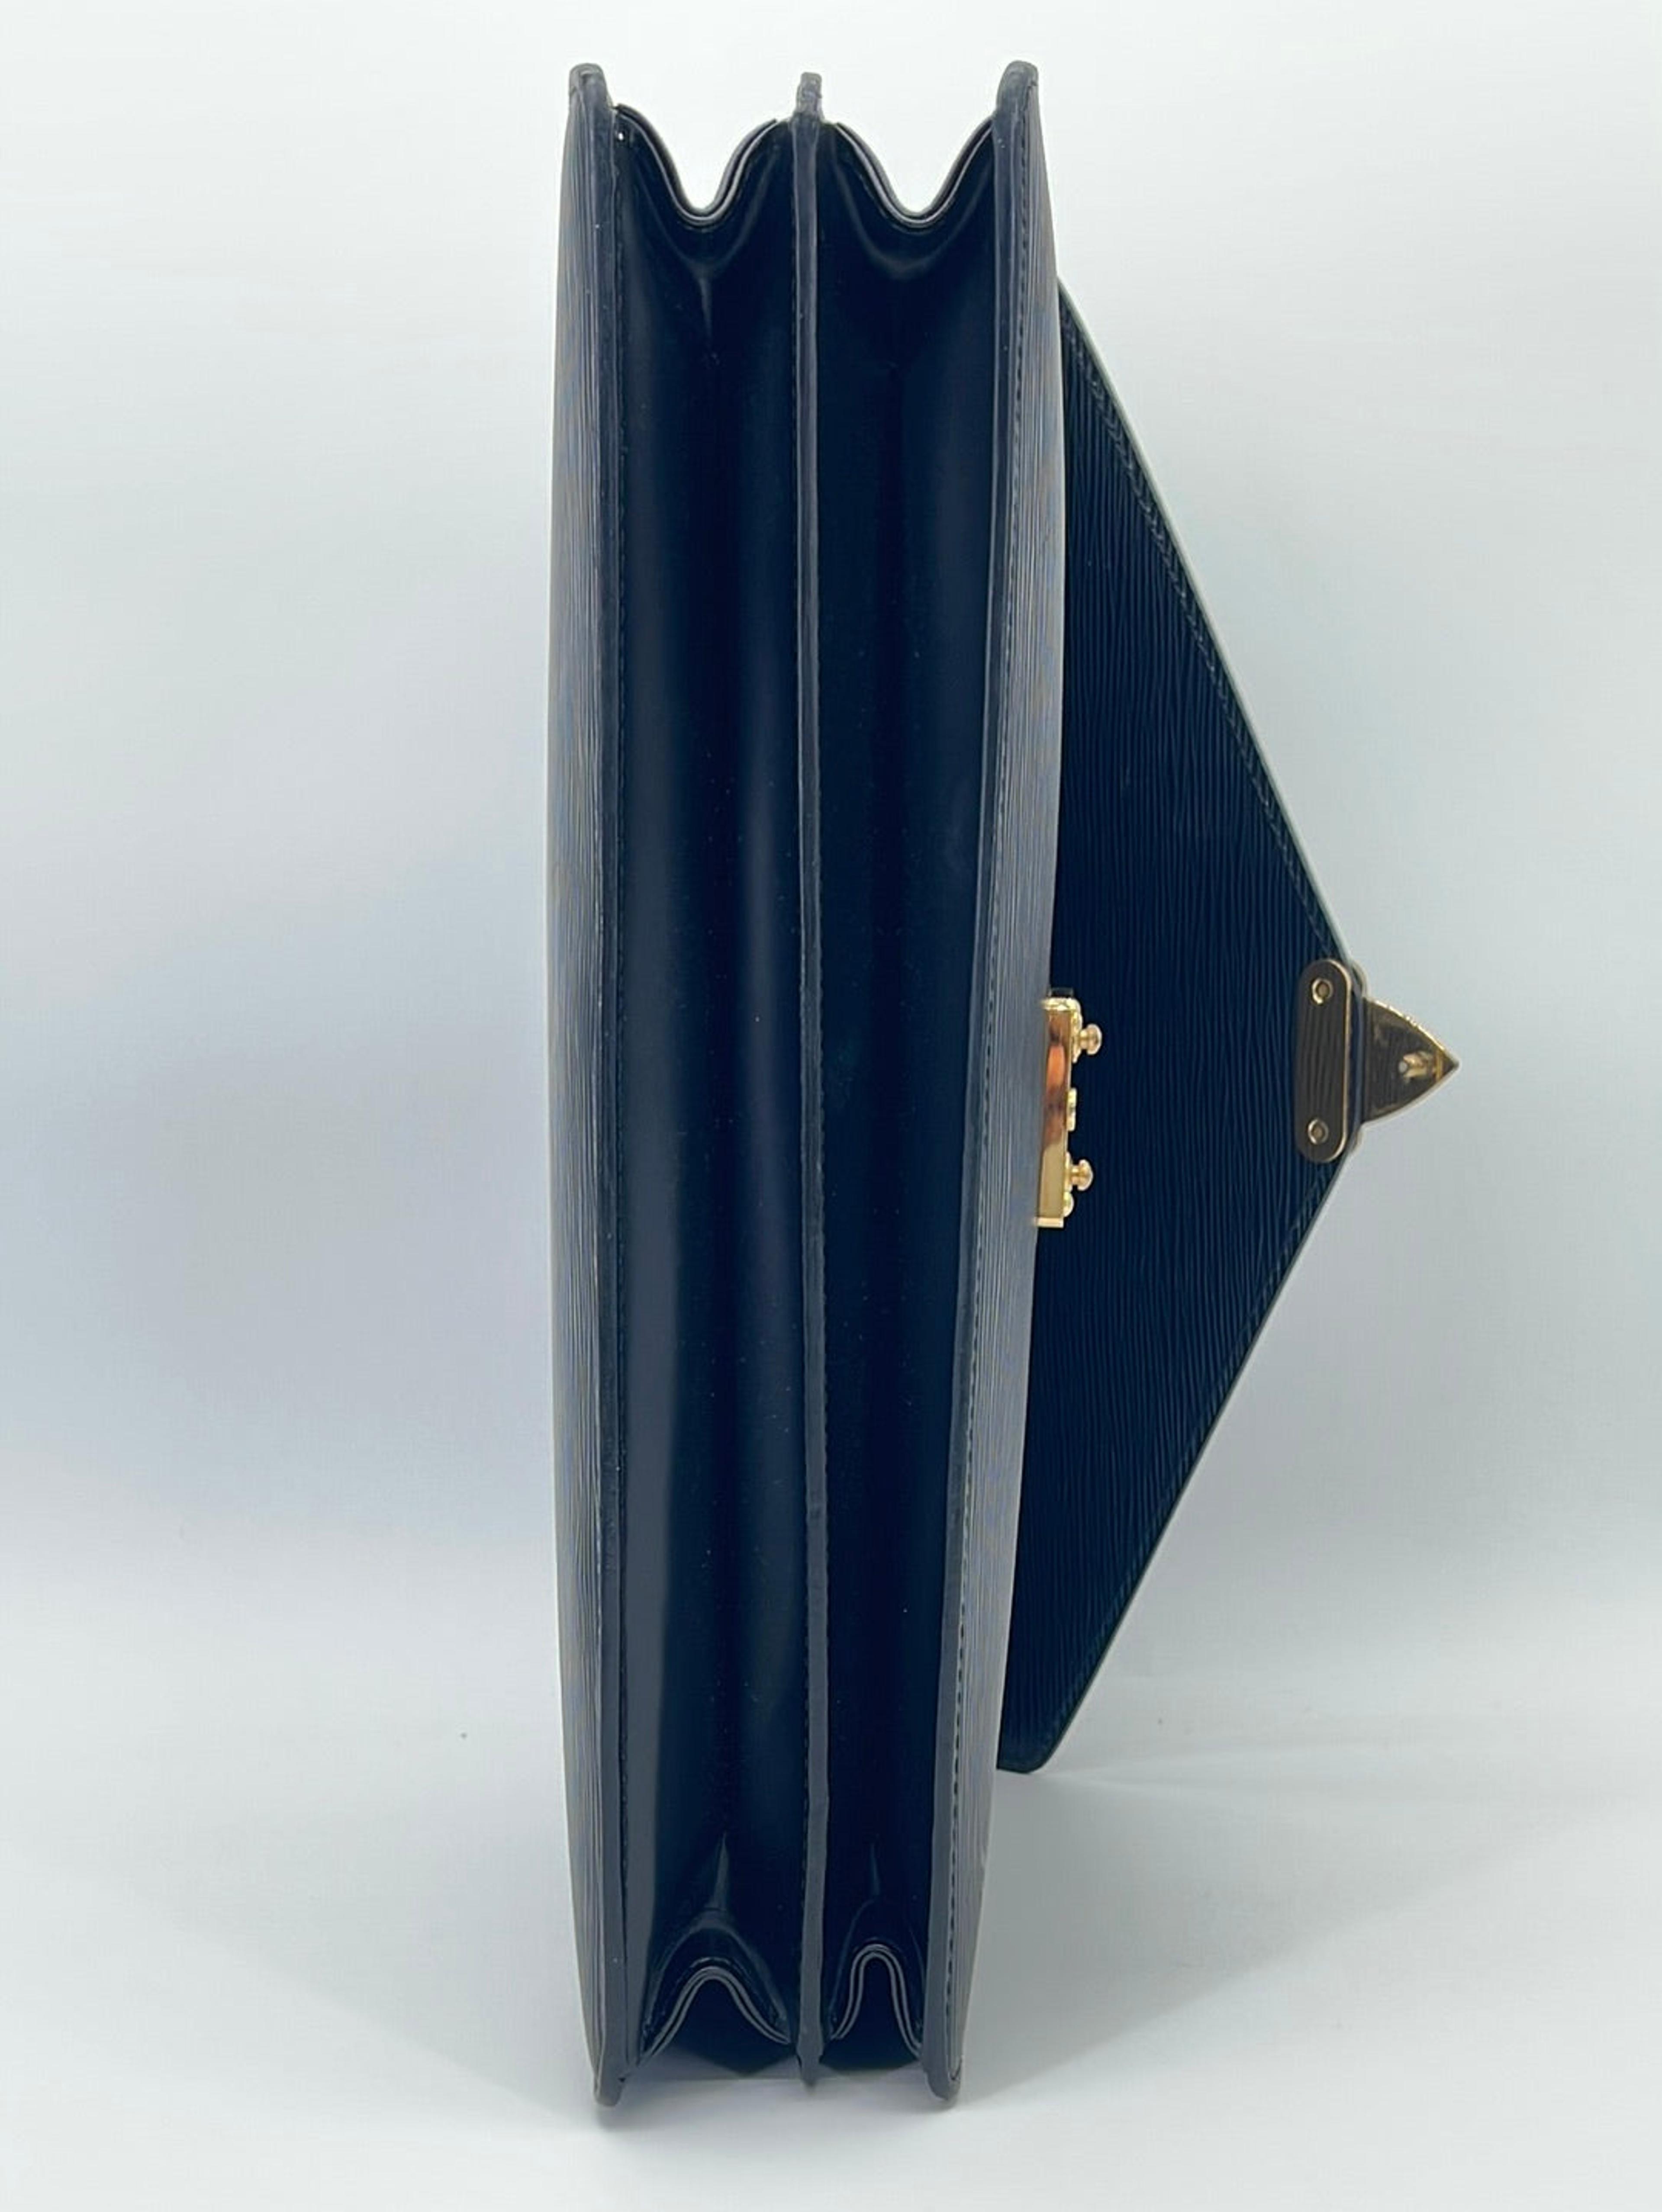 Louis Vuitton - Serviette Conseiller - Business bag - Catawiki